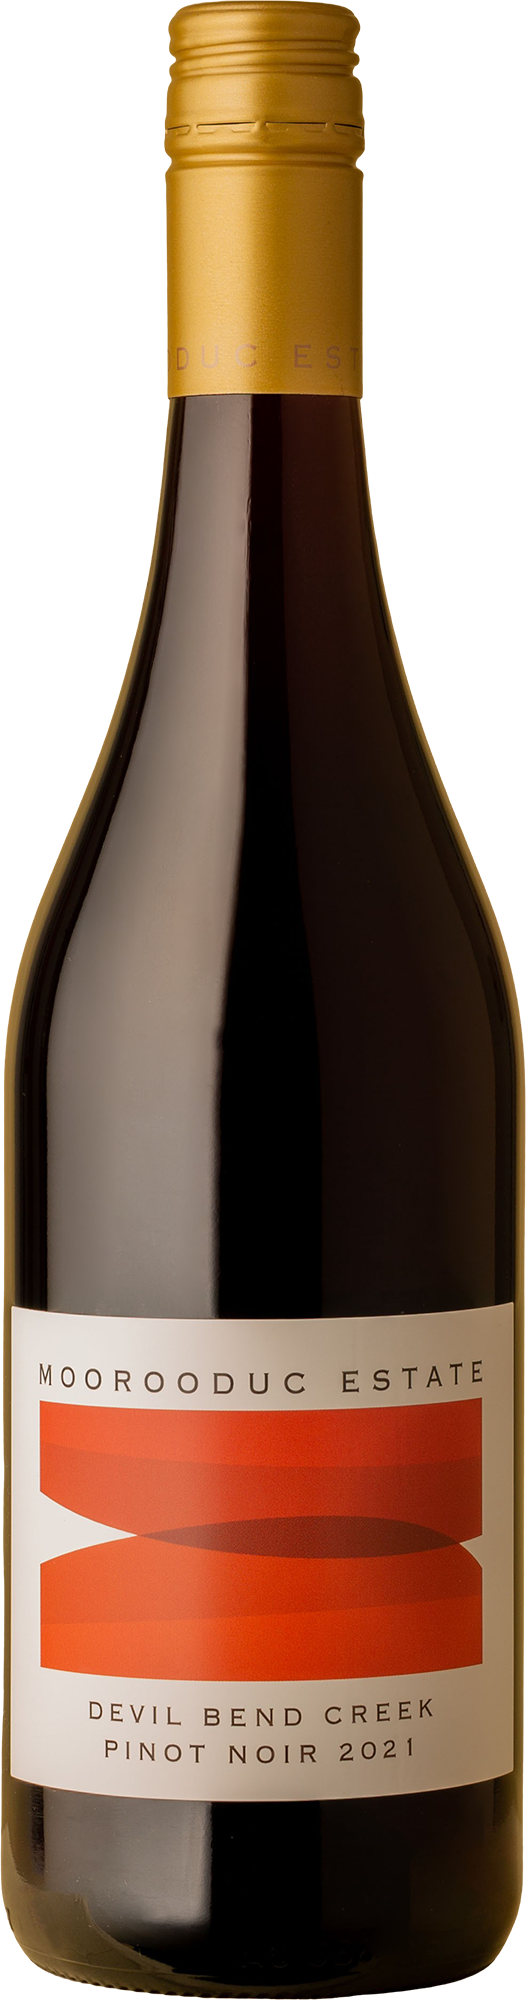 Moorooduc - Devil Bend Creek Pinot Noir 2021 Red Wine